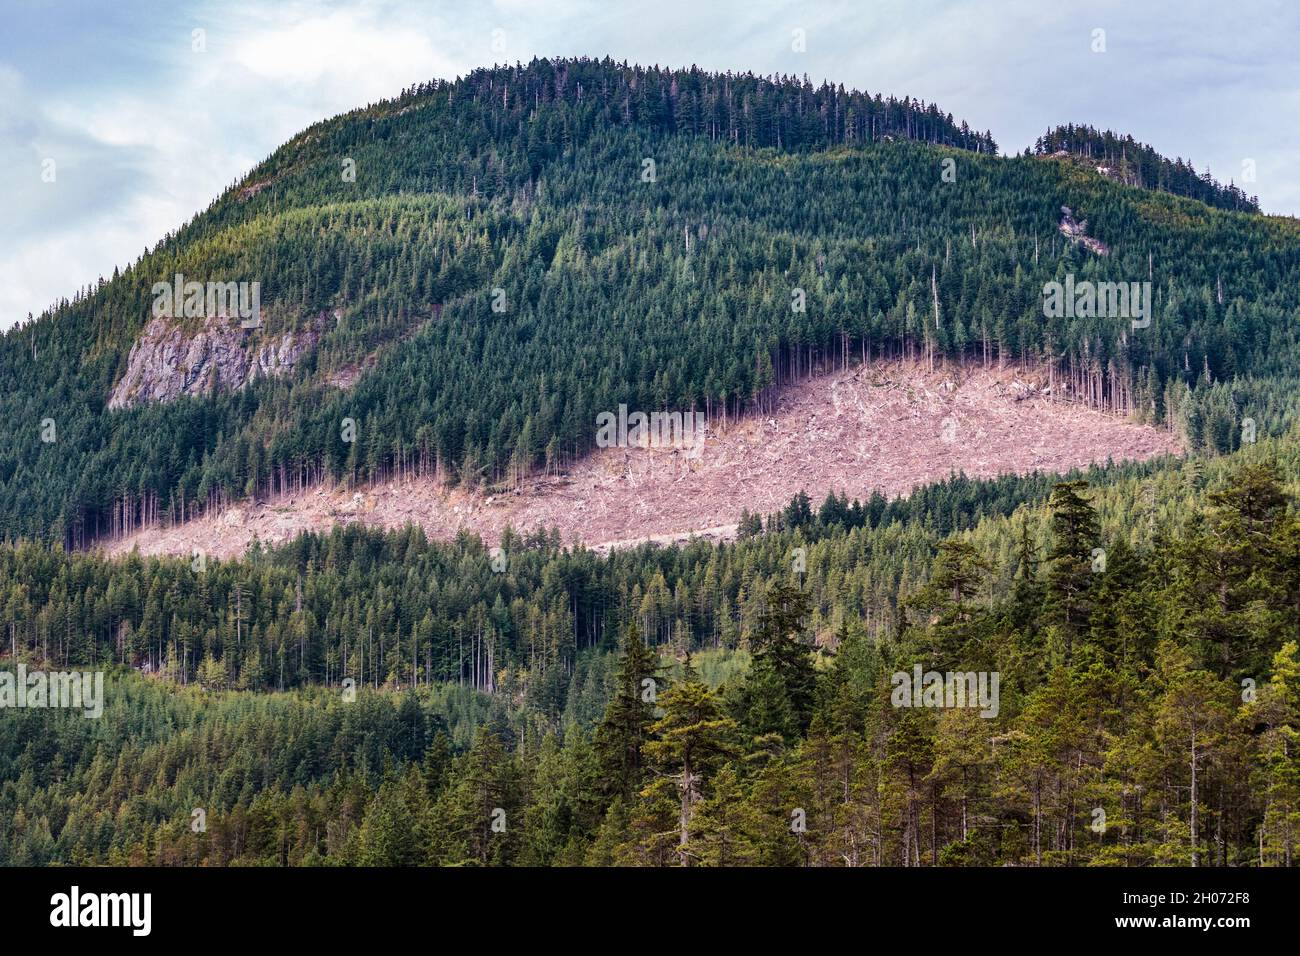 Ein Waldstück an einem Berghang an der Küste von British Columbia wurde klar geschnitten, wobei eine Forststraße am Fuße des abgeholzten Gebiets sichtbar ist. Stockfoto